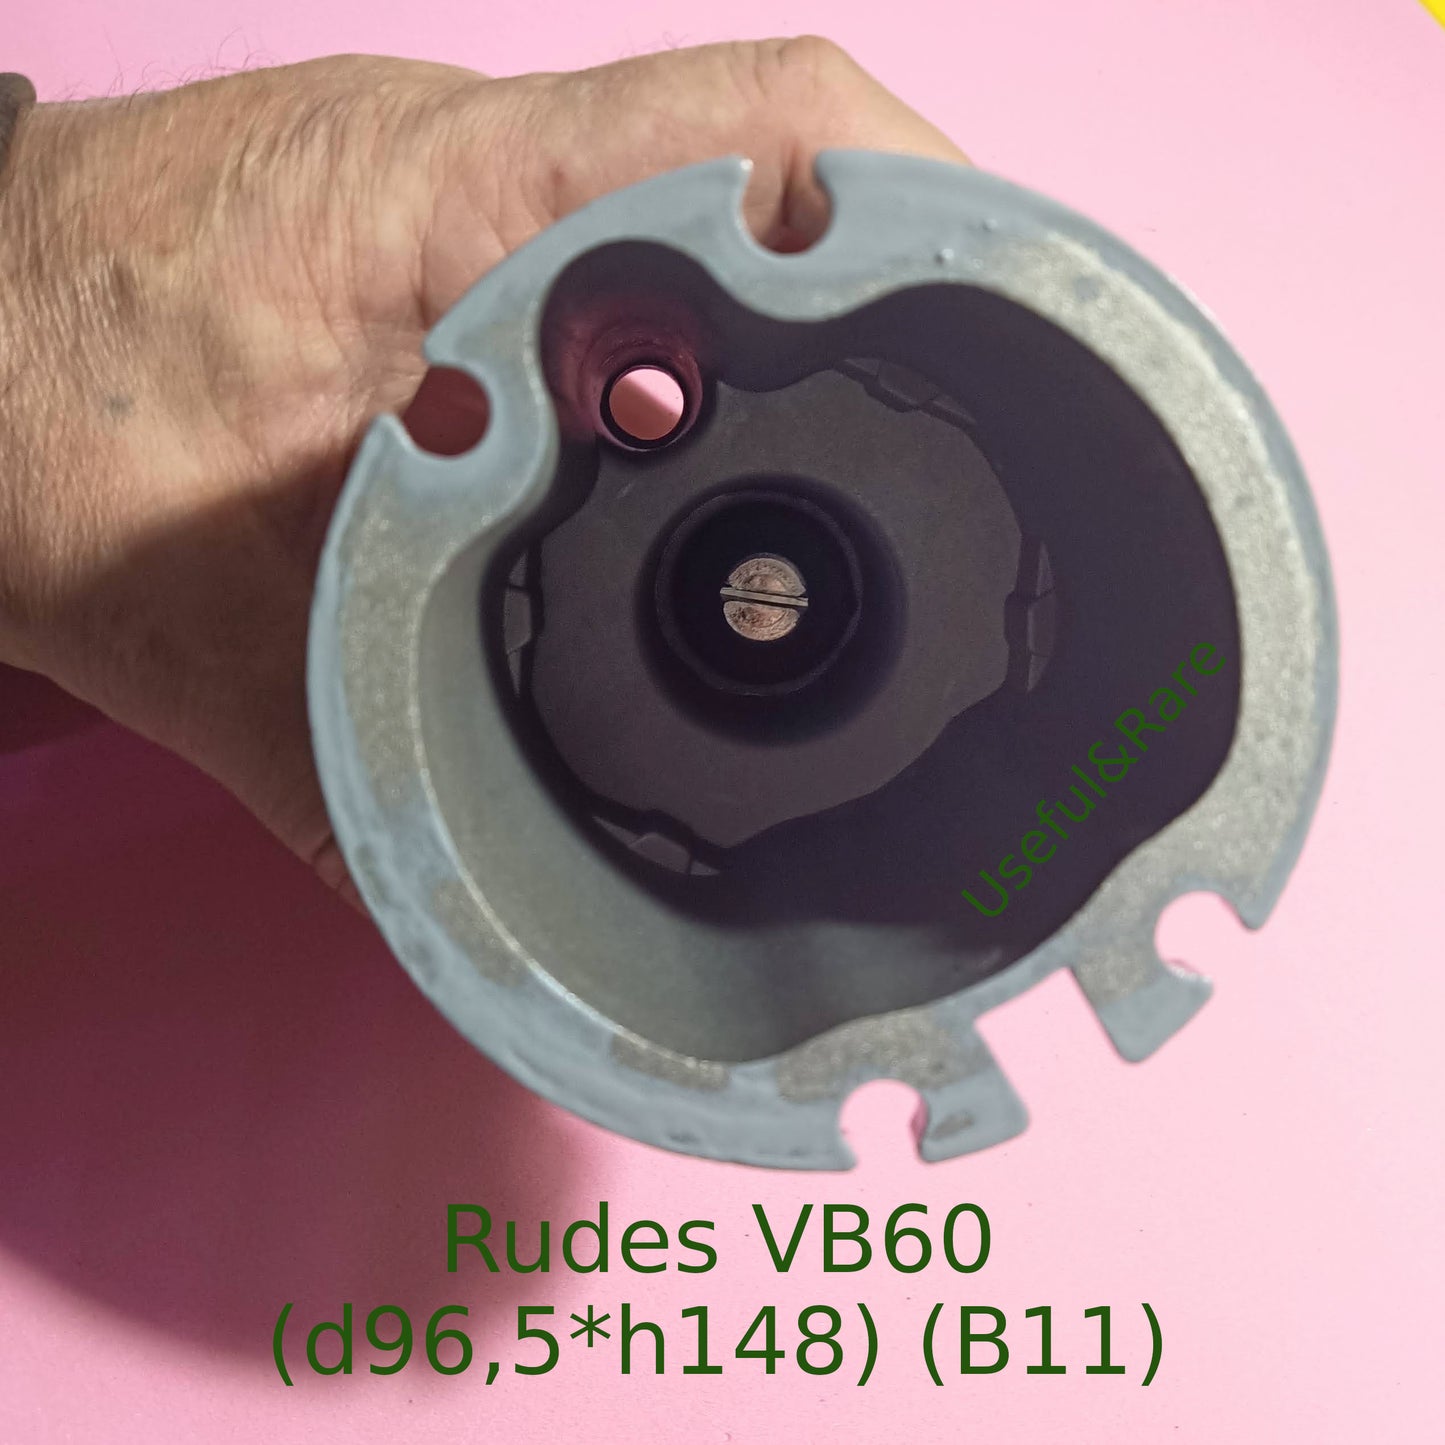 Rudes VB60 (ф96,5*146) (B11)